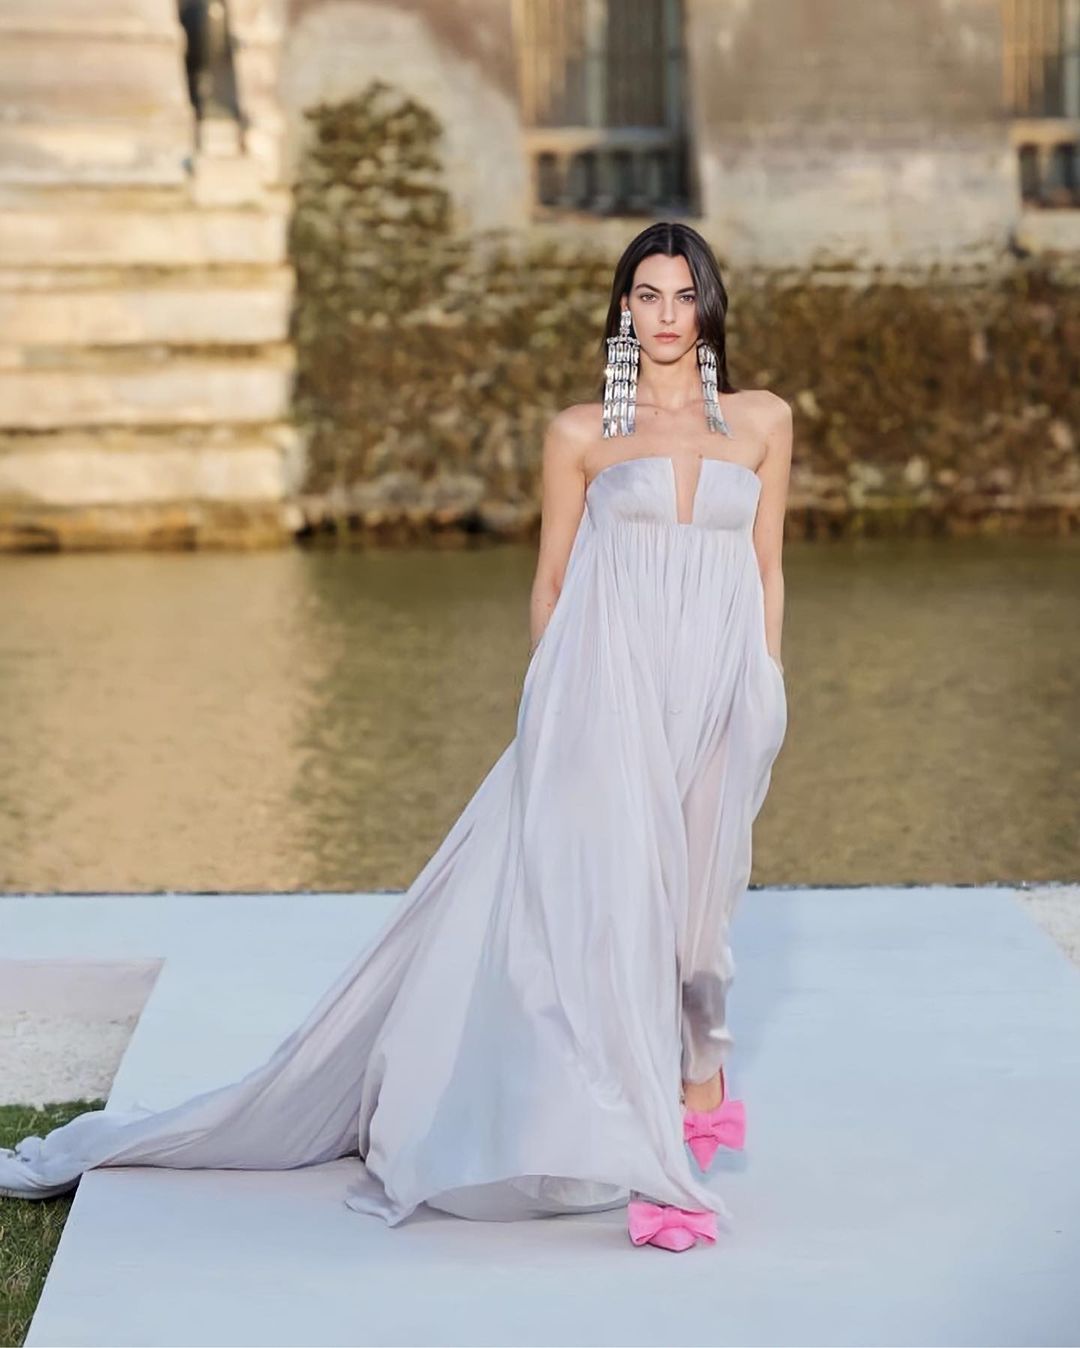 Vittoria Ceretti for Valentino Couture 23/24FW Show "Un Château" - 哔哩哔哩